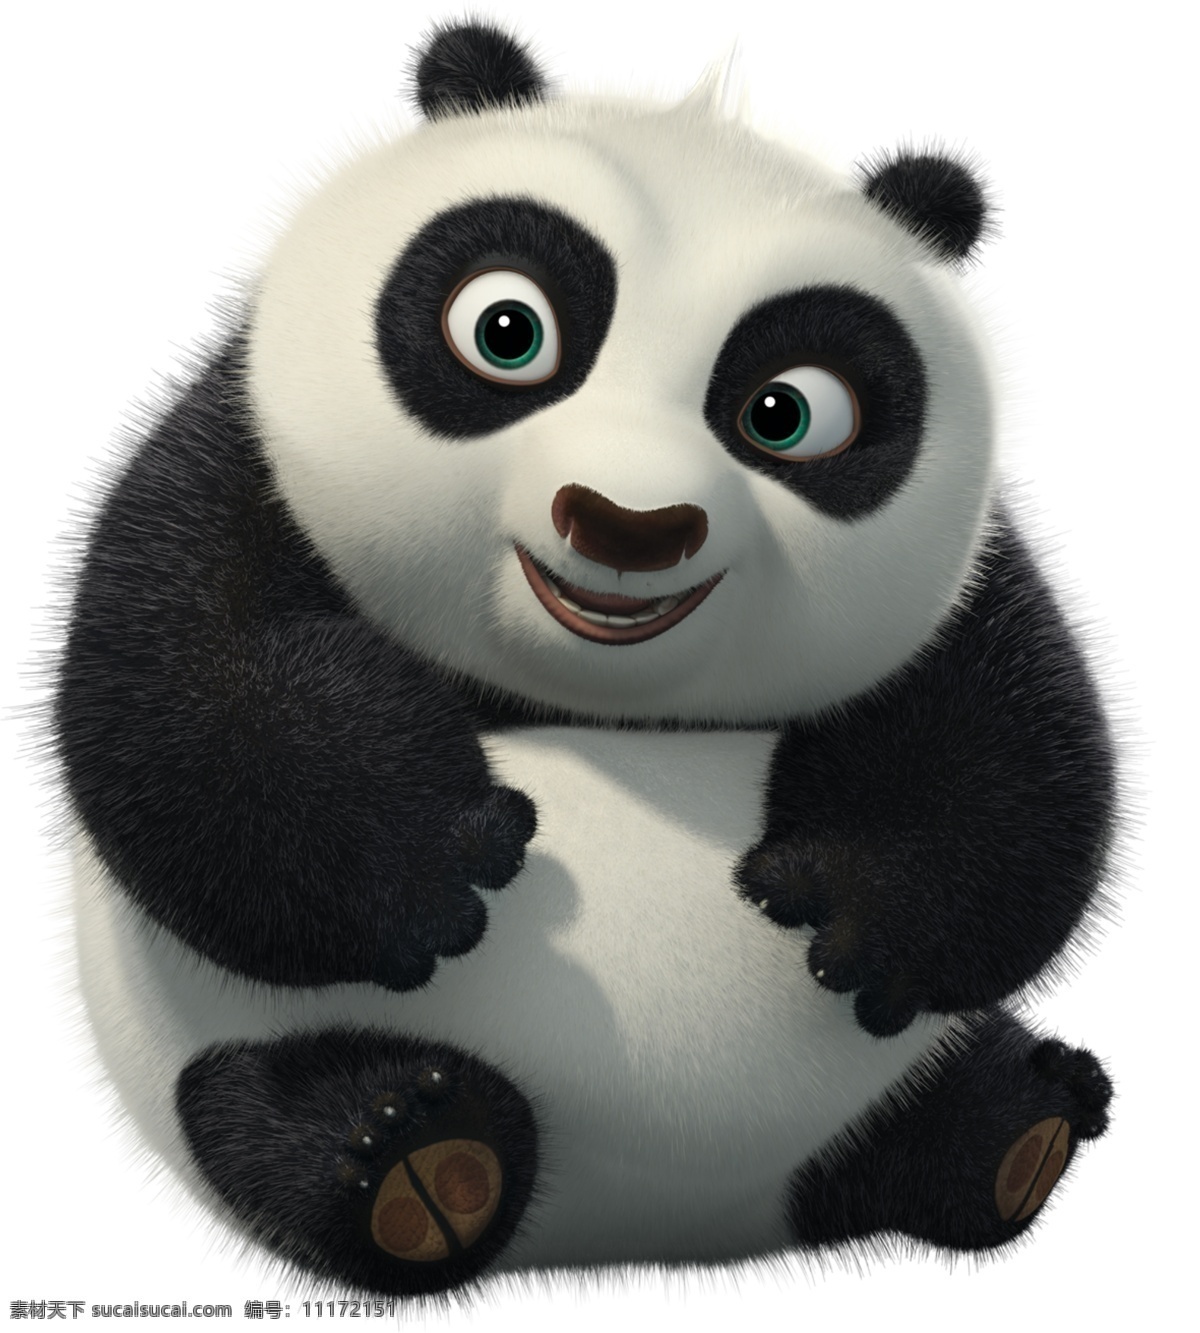 功夫熊猫卡通 功夫熊猫 高清熊猫 影视娱乐 文化艺术 功夫 熊猫 设计素材 小熊猫 熊猫卡通 电影素材 分层 源文件